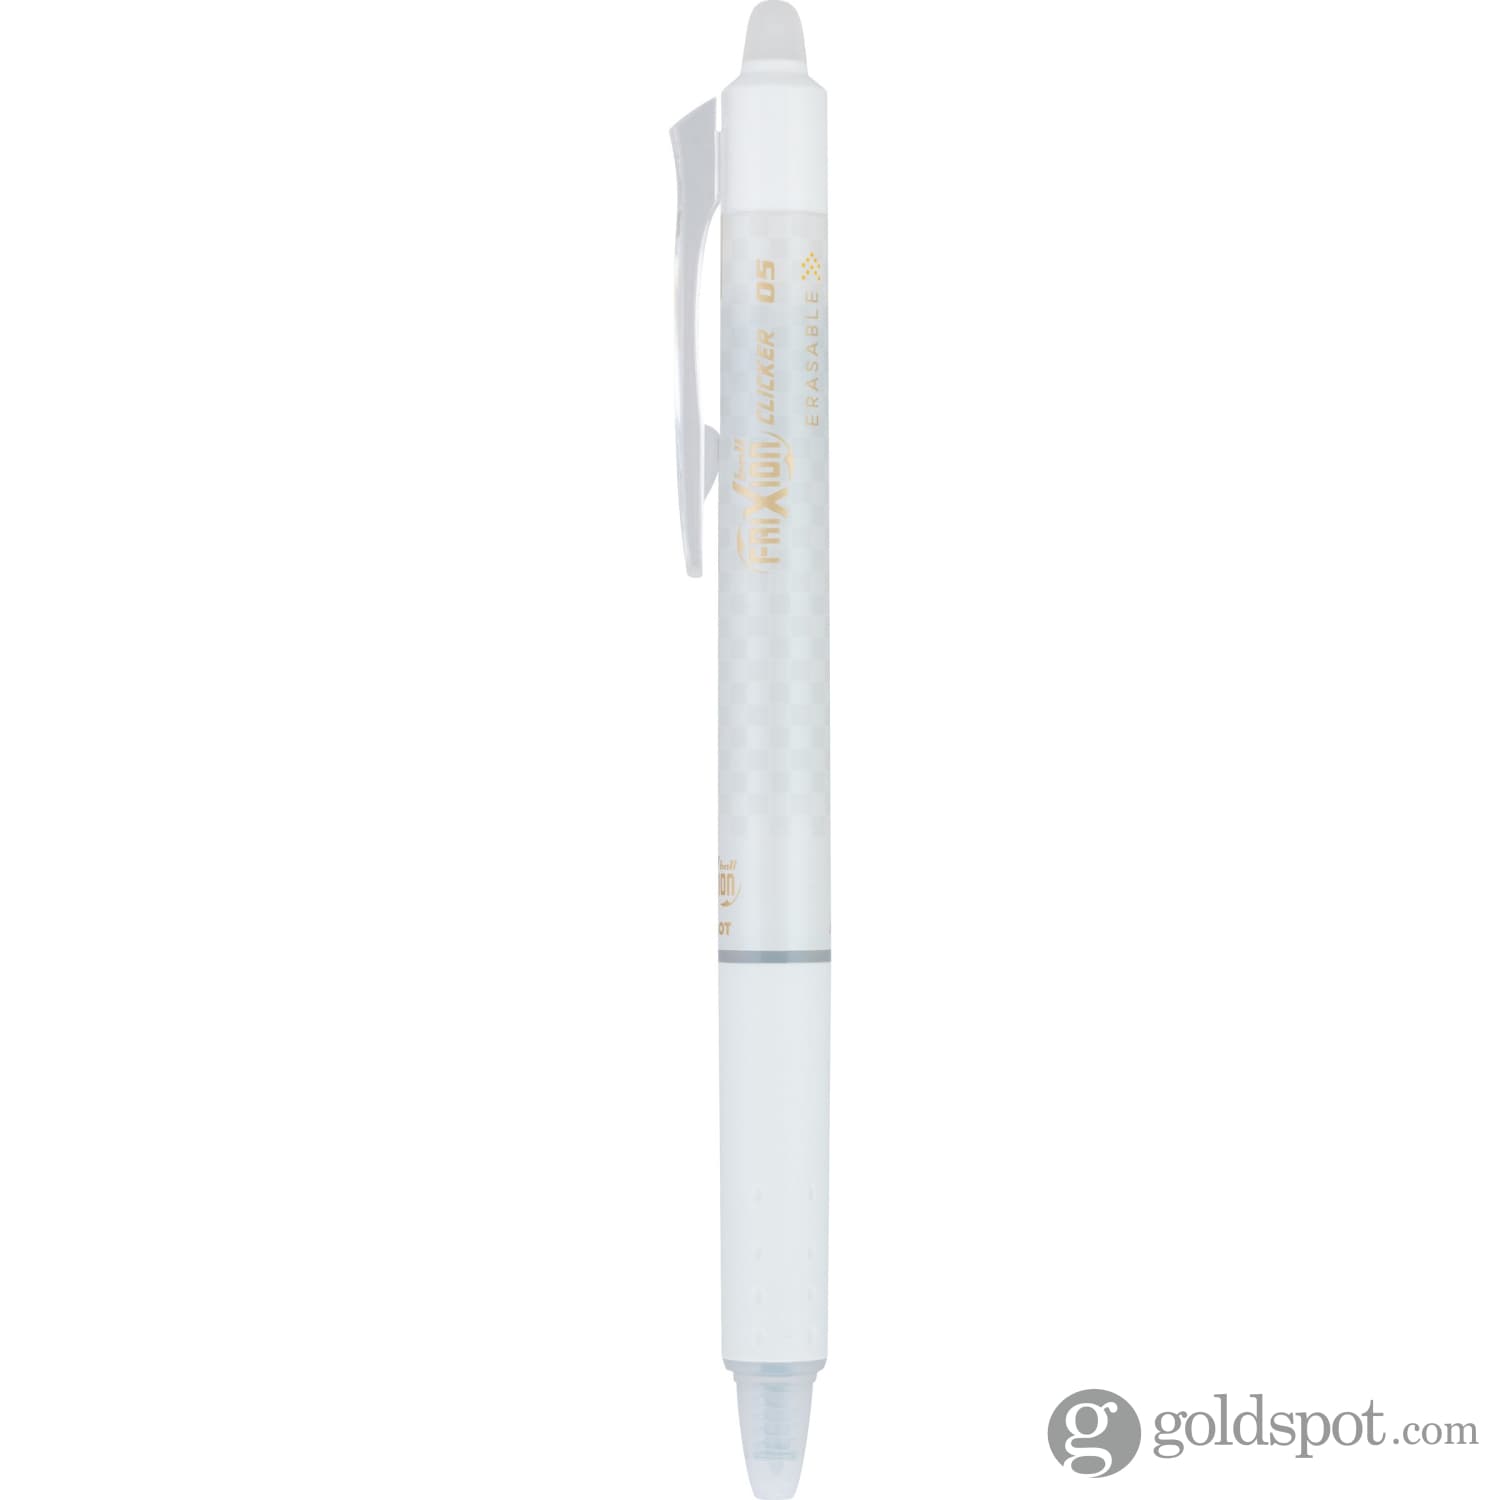  Pilot Gel Ink Refills for FriXion Erasable Gel Ink Pen, 0.7mm  Fine Point, Black Ink, 3 Pack (77330) : Office Products